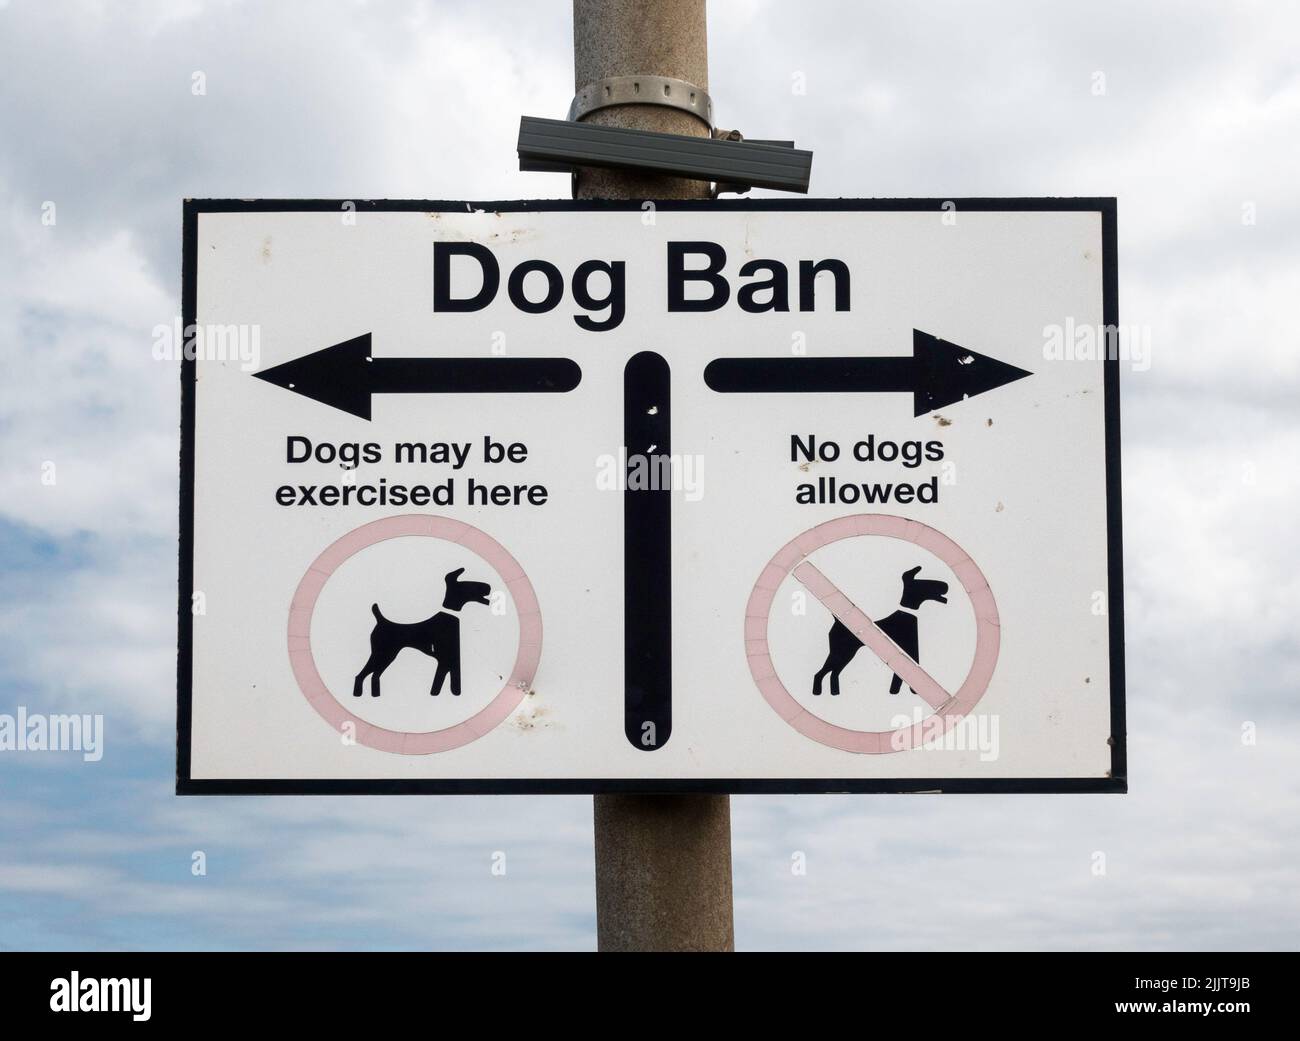 Ein Schild, das die Bereiche des Strandes, in denen Hunde ausgeübt werden können, bezeichnet, Seaton Carew, Hartlepool, England, Großbritannien Stockfoto